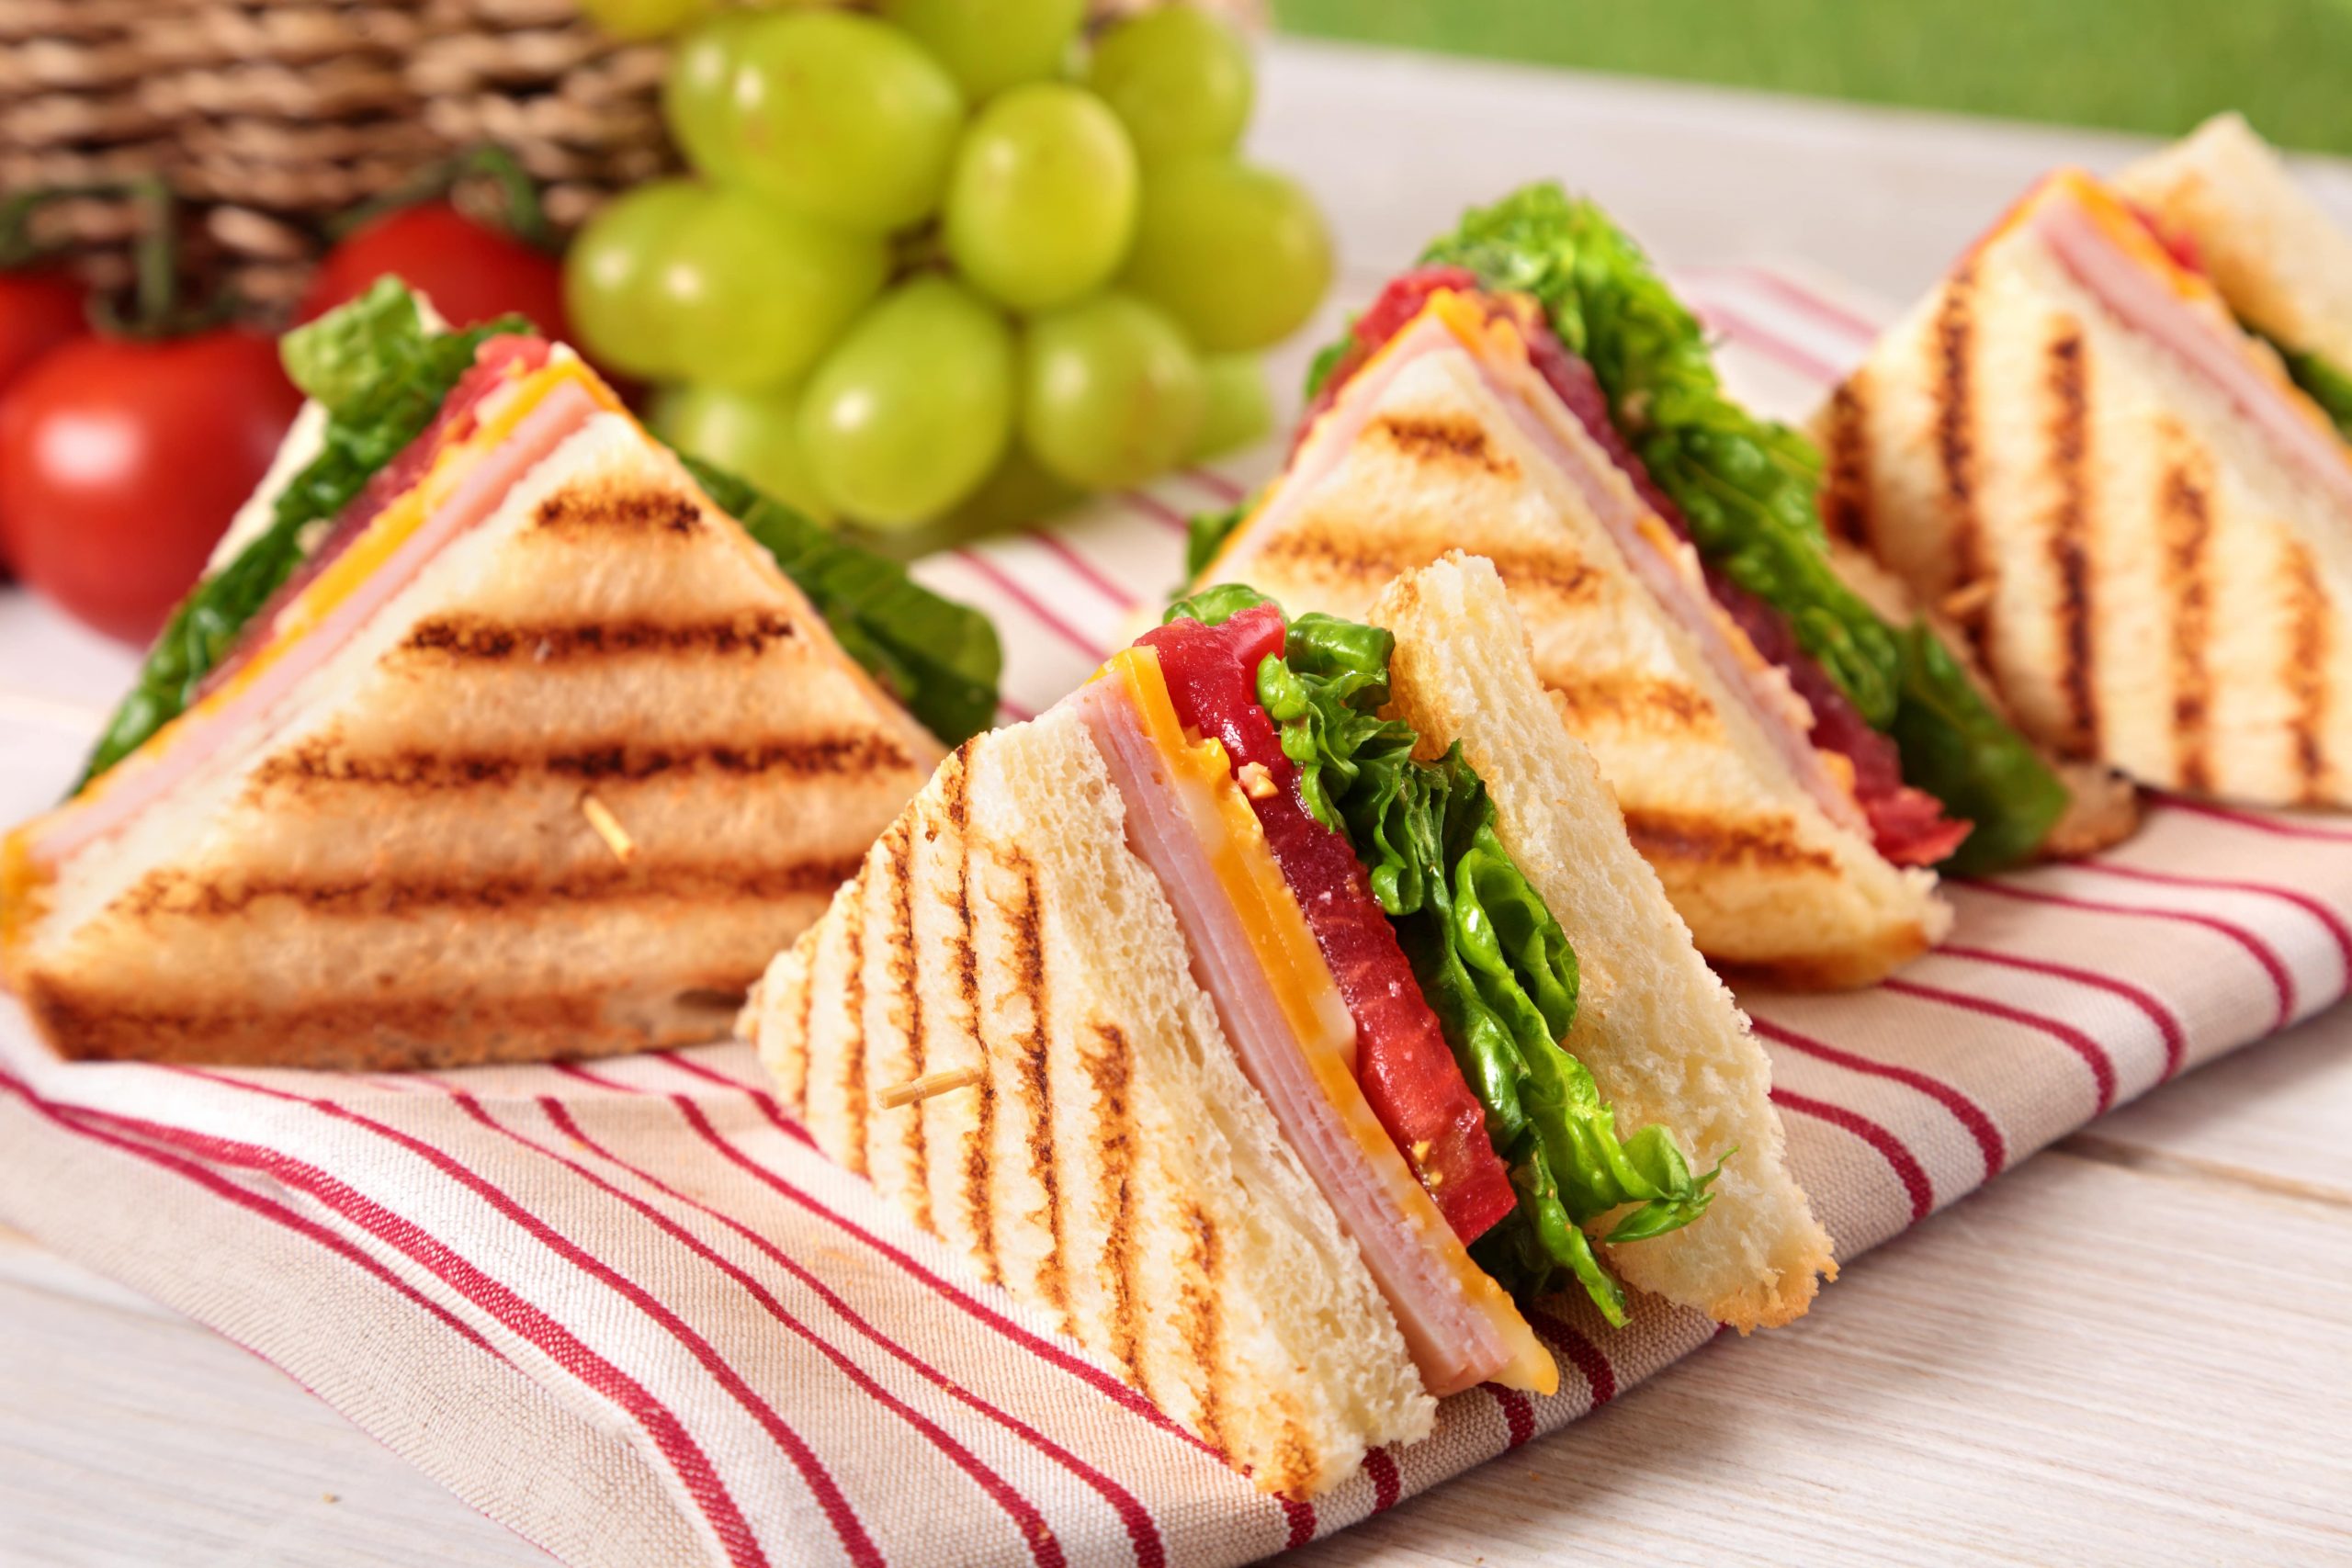 Apa itu Generasi Sandwich dan Bagaimana Cara Memutus Mata Rantainya?